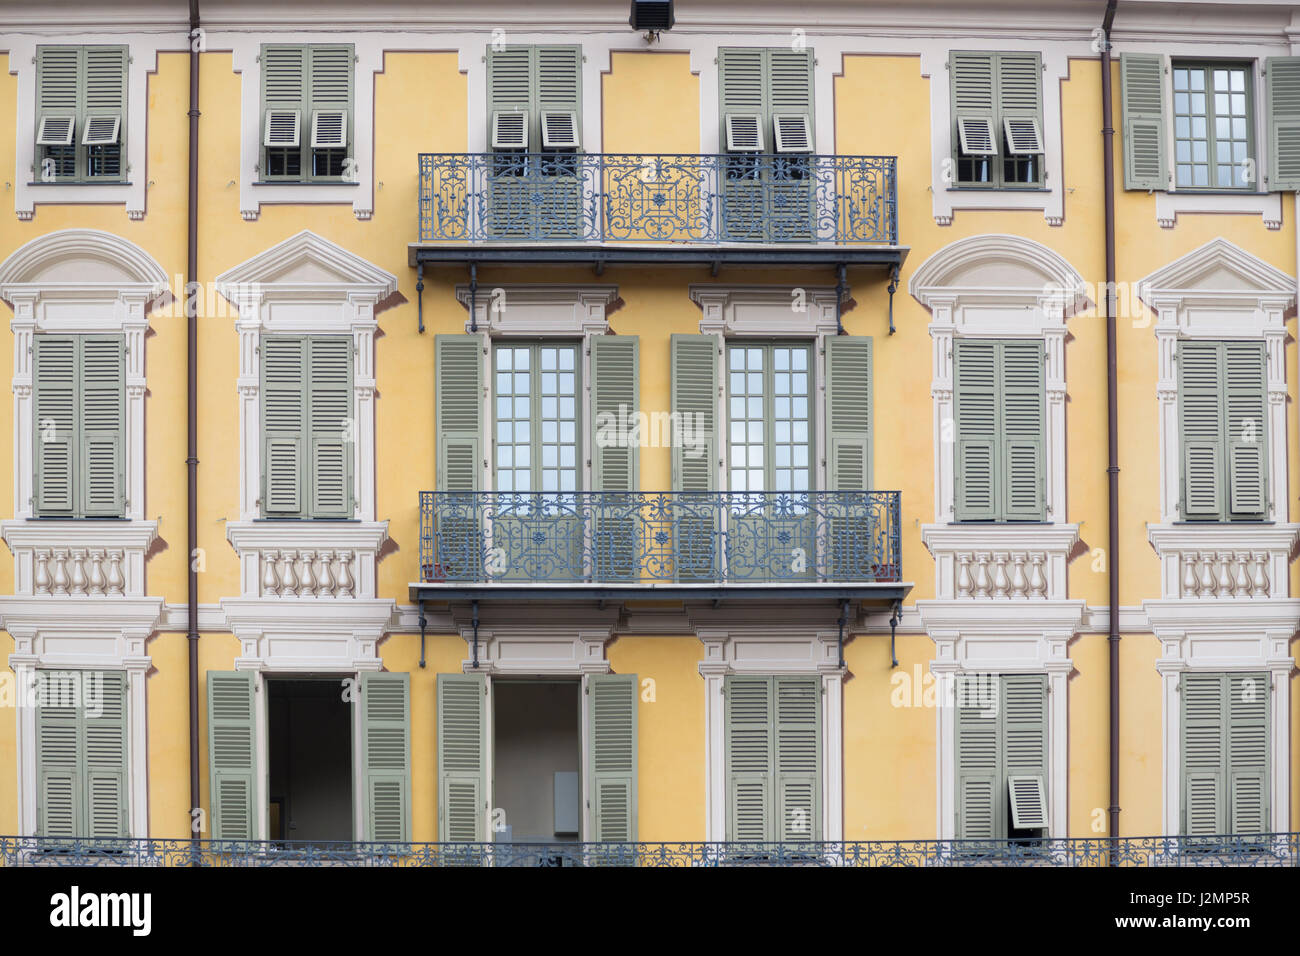 Frankreich, Nizza, französischer Architektur: Fensterläden, Fenster und Balkone in Place Garibaldi. Stockfoto